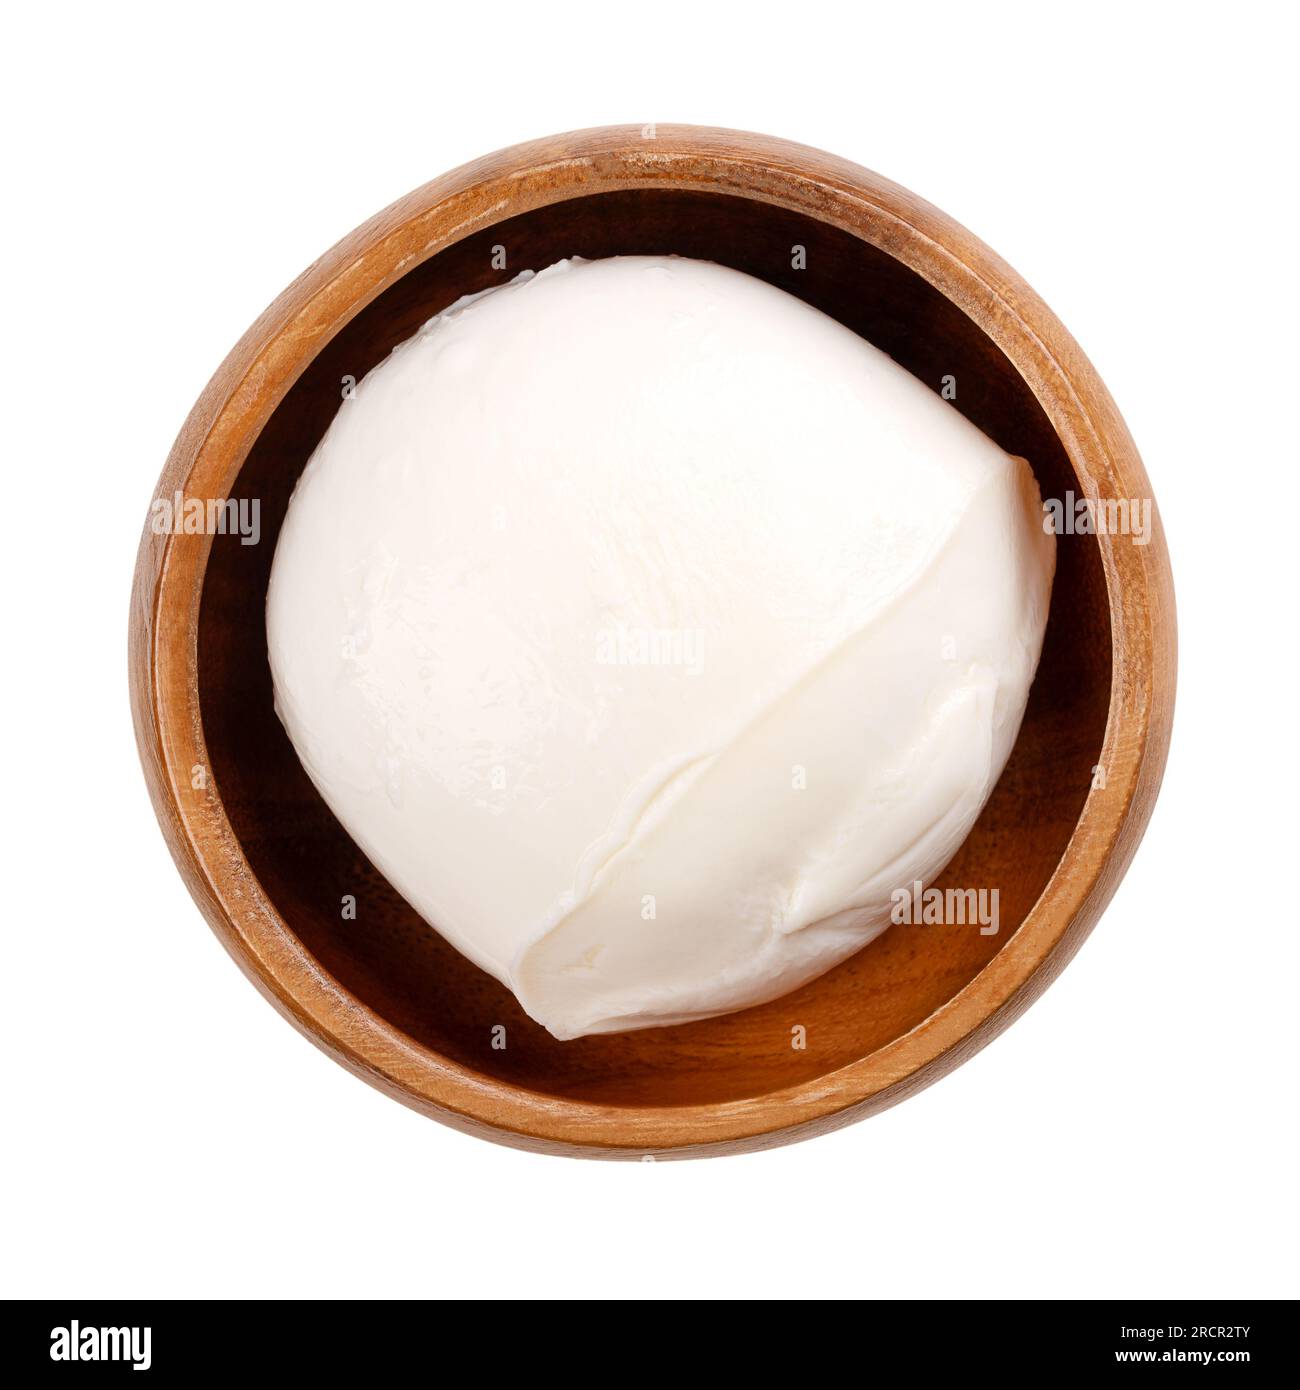 Grande palla di mozzarella, in una ciotola di legno. Formaggio bianco fresco dell'Italia meridionale a base di latte con il metodo della pasta filata. Usato per pizza, ecc. Foto Stock